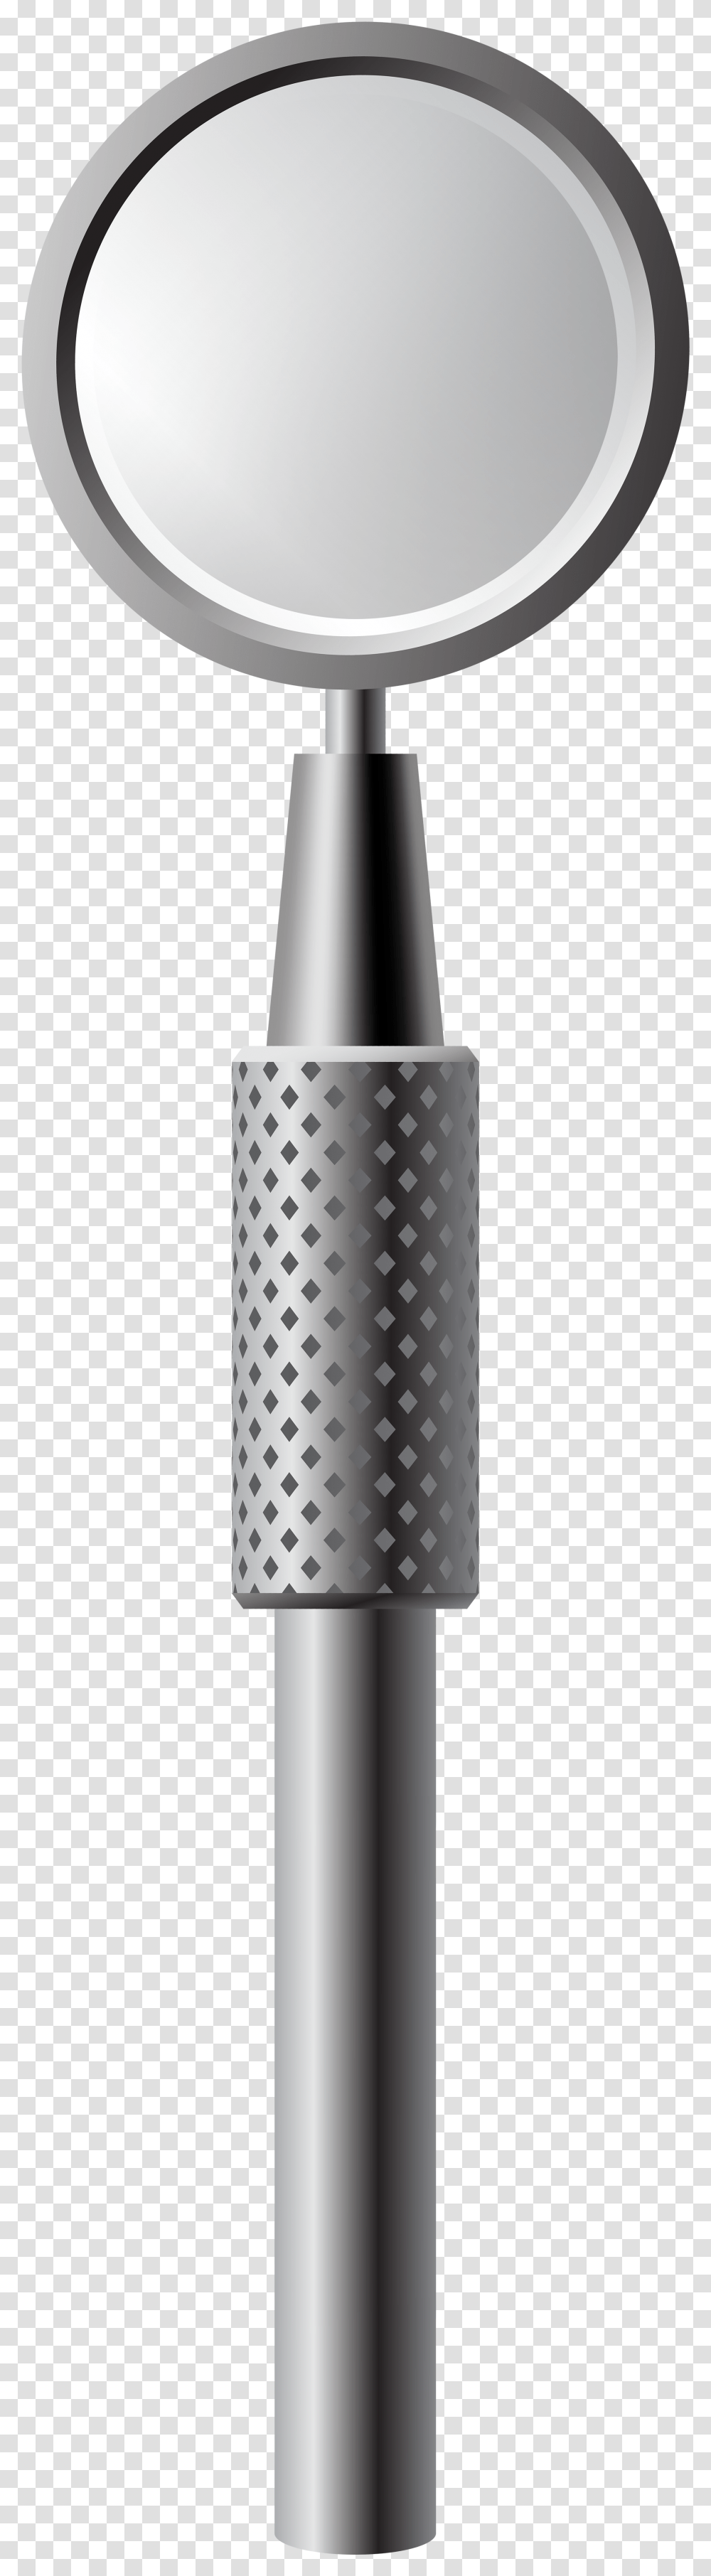 Dental Mirror Clip Art Polka Dot, Cylinder, Bottle, Lamp, Shaker Transparent Png